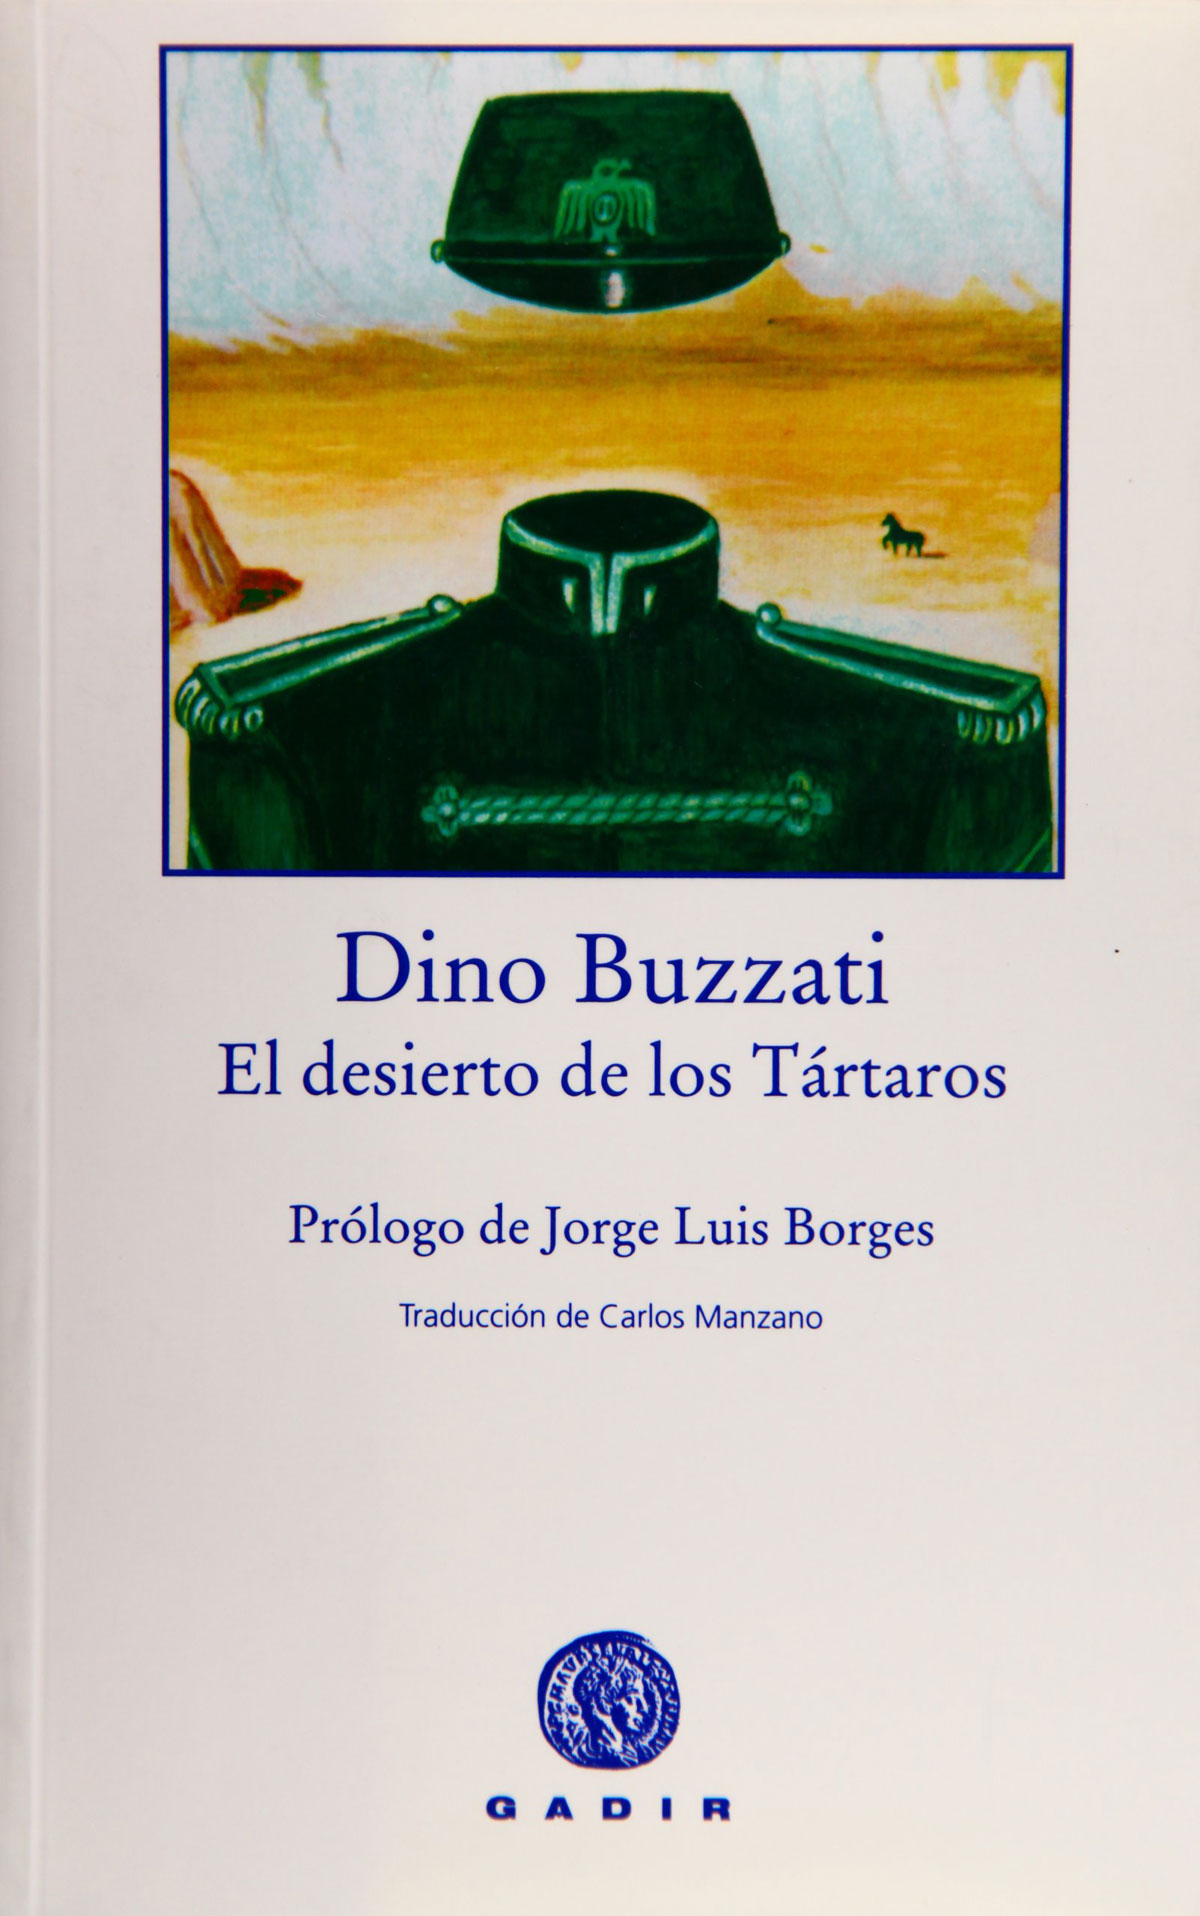 Portada de la novela El desierto de los Tártaros, de Dino Buzzati